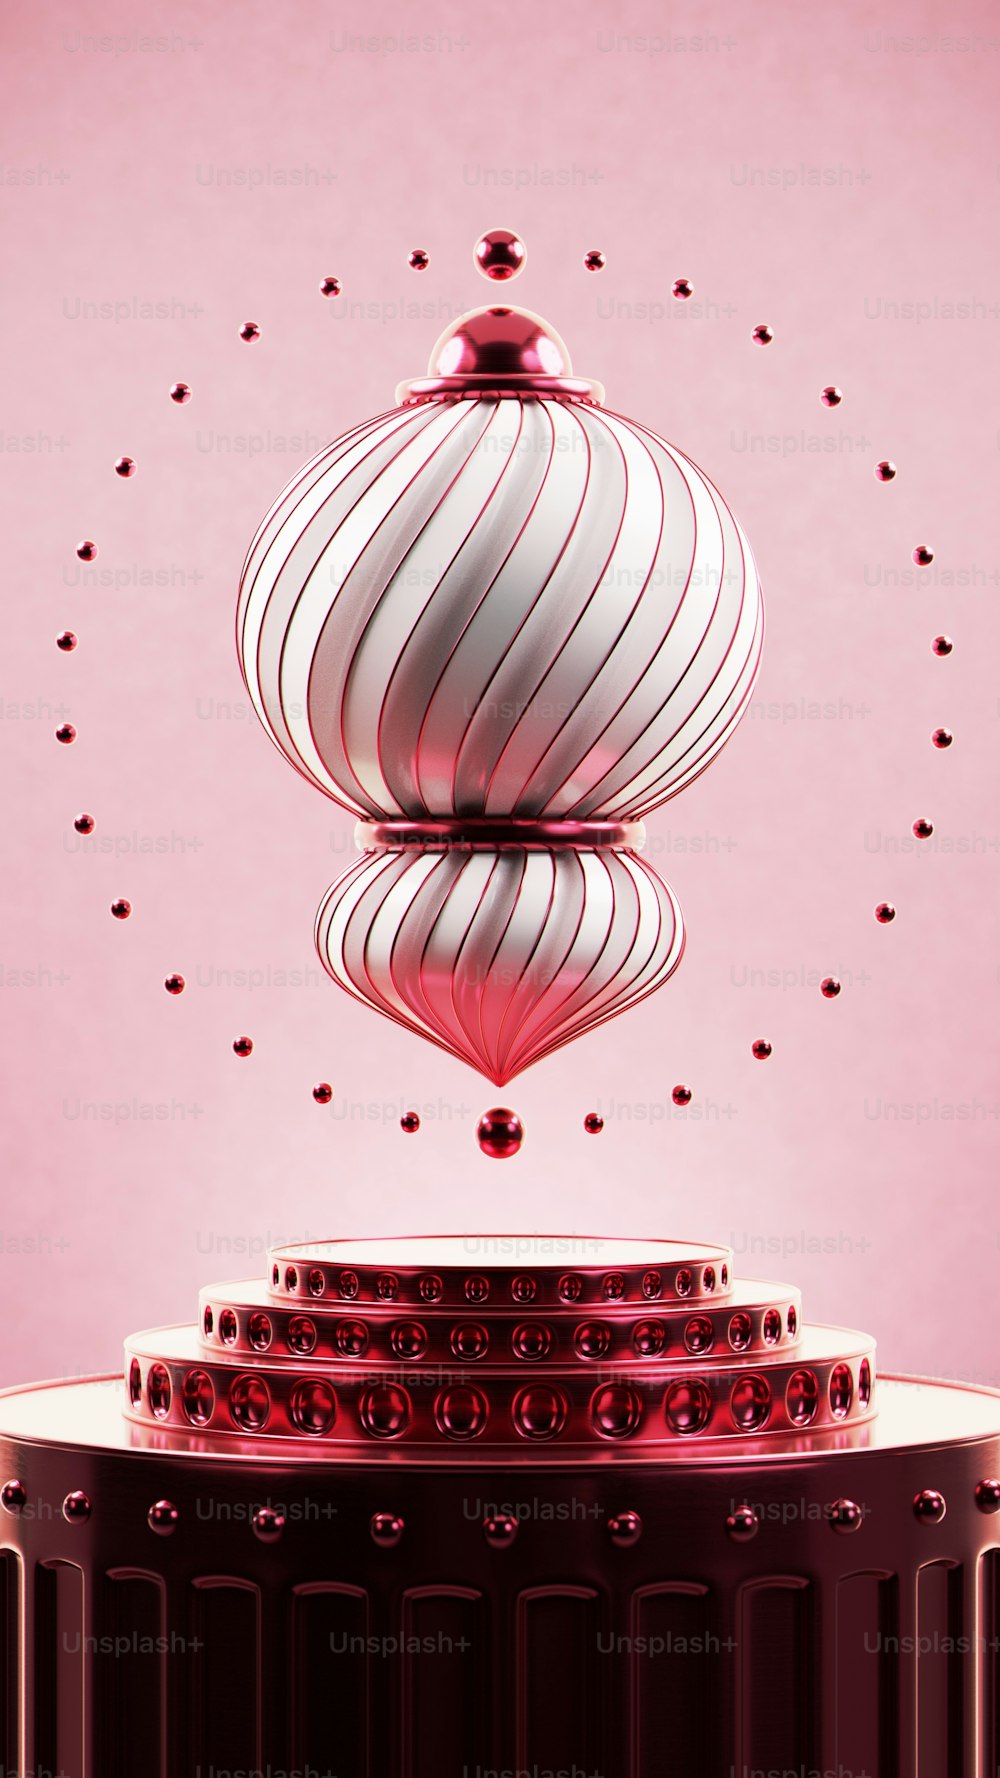 Un oggetto circolare rosso e bianco con sfondo rosa